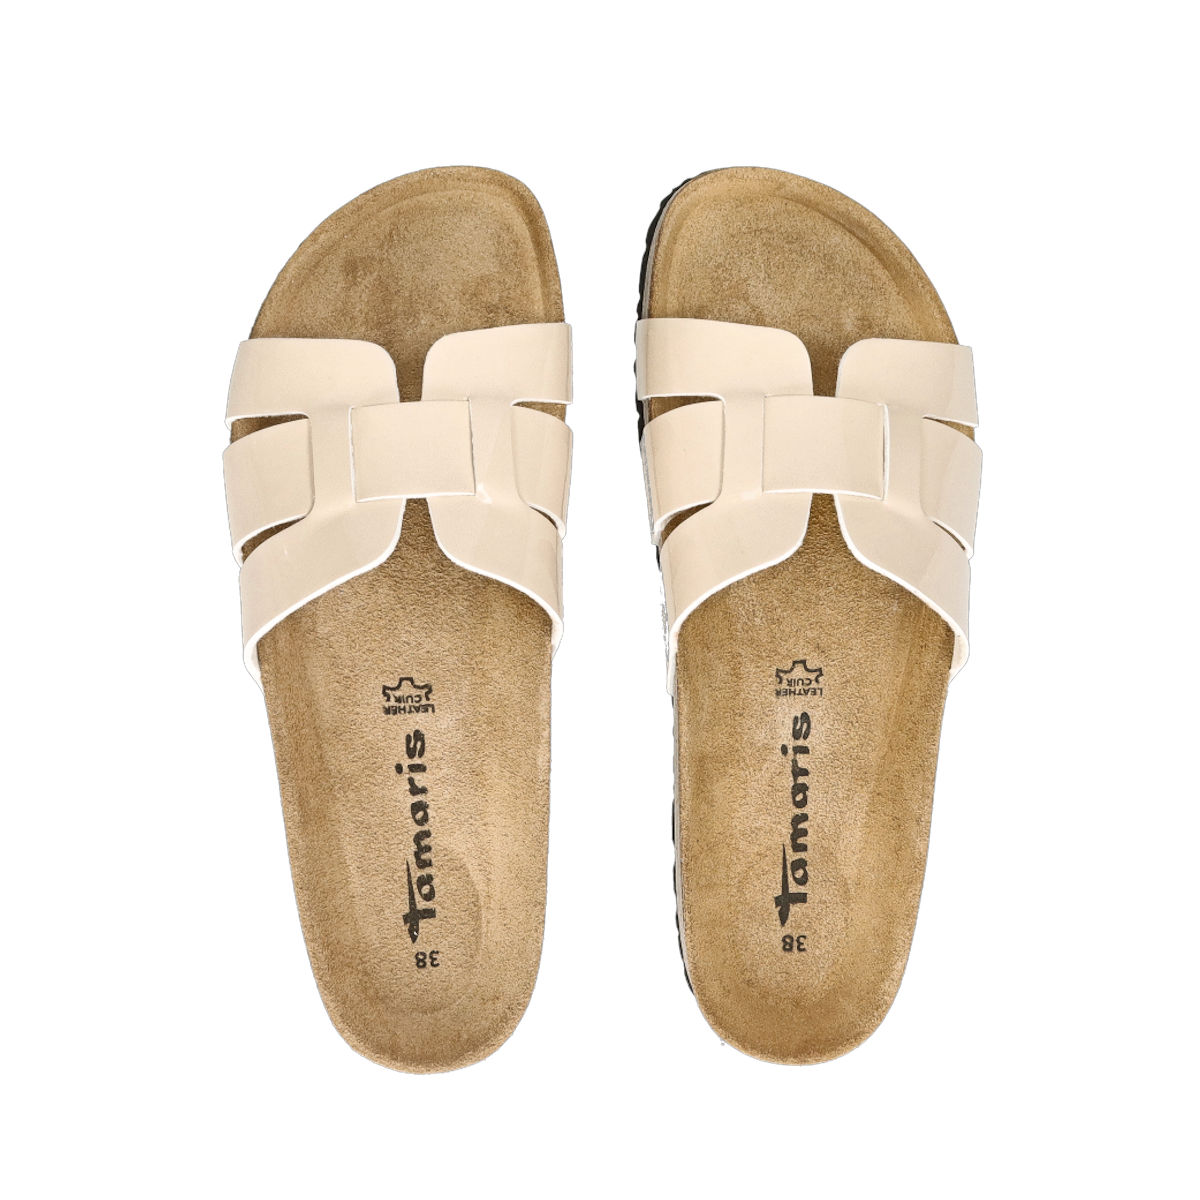 Minachting school Toezicht houden Tamaris women´s comfortable slippers - beige | Robel.shoes